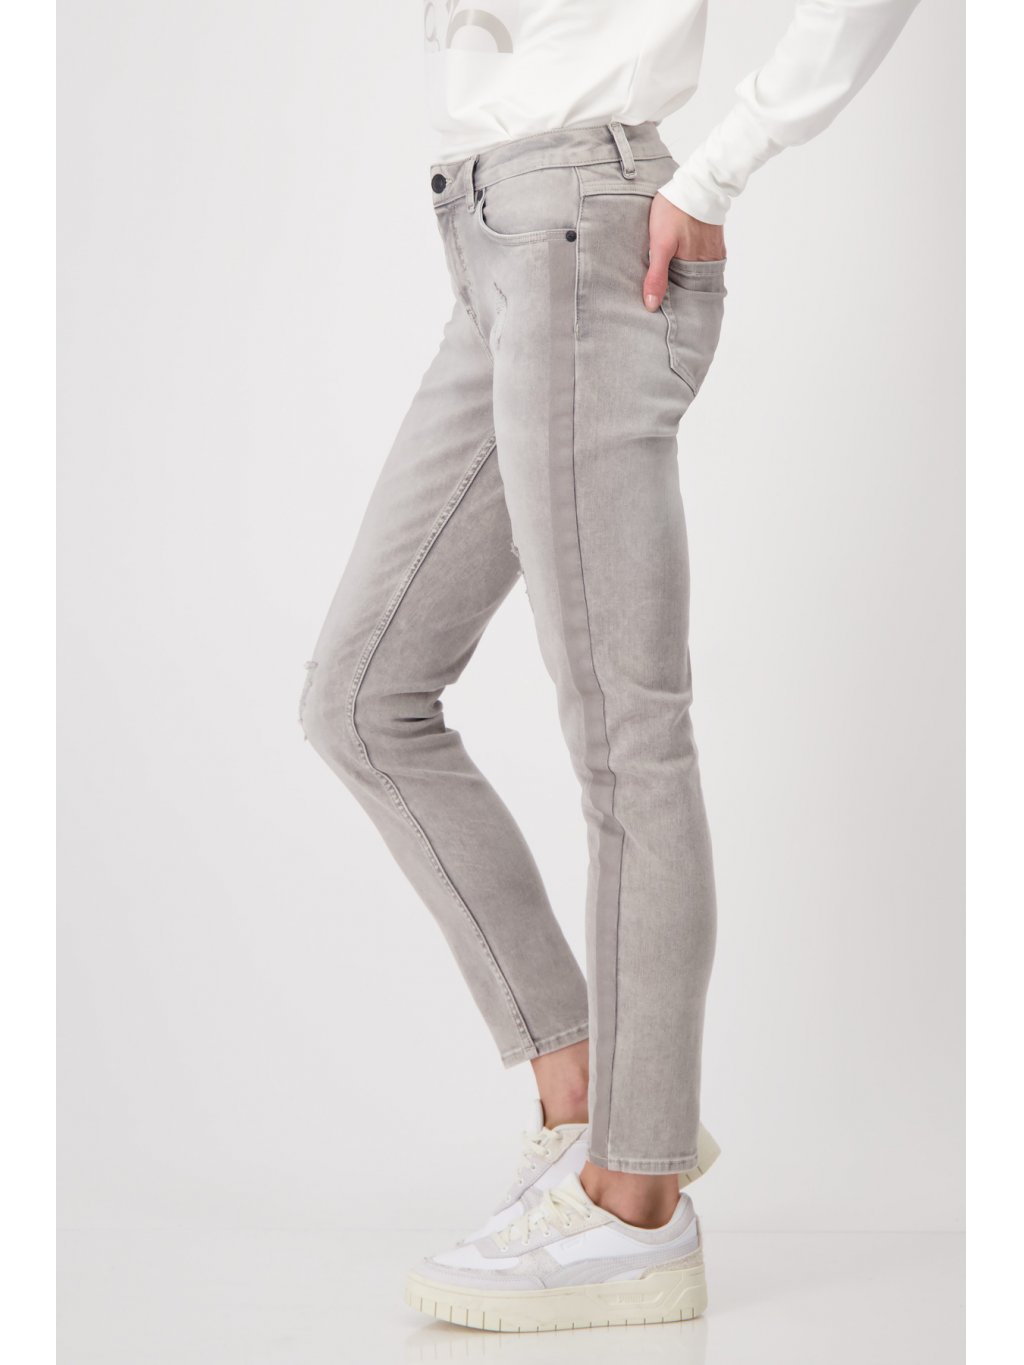 Kalhoty Monari 7349 jemně šedé džíny